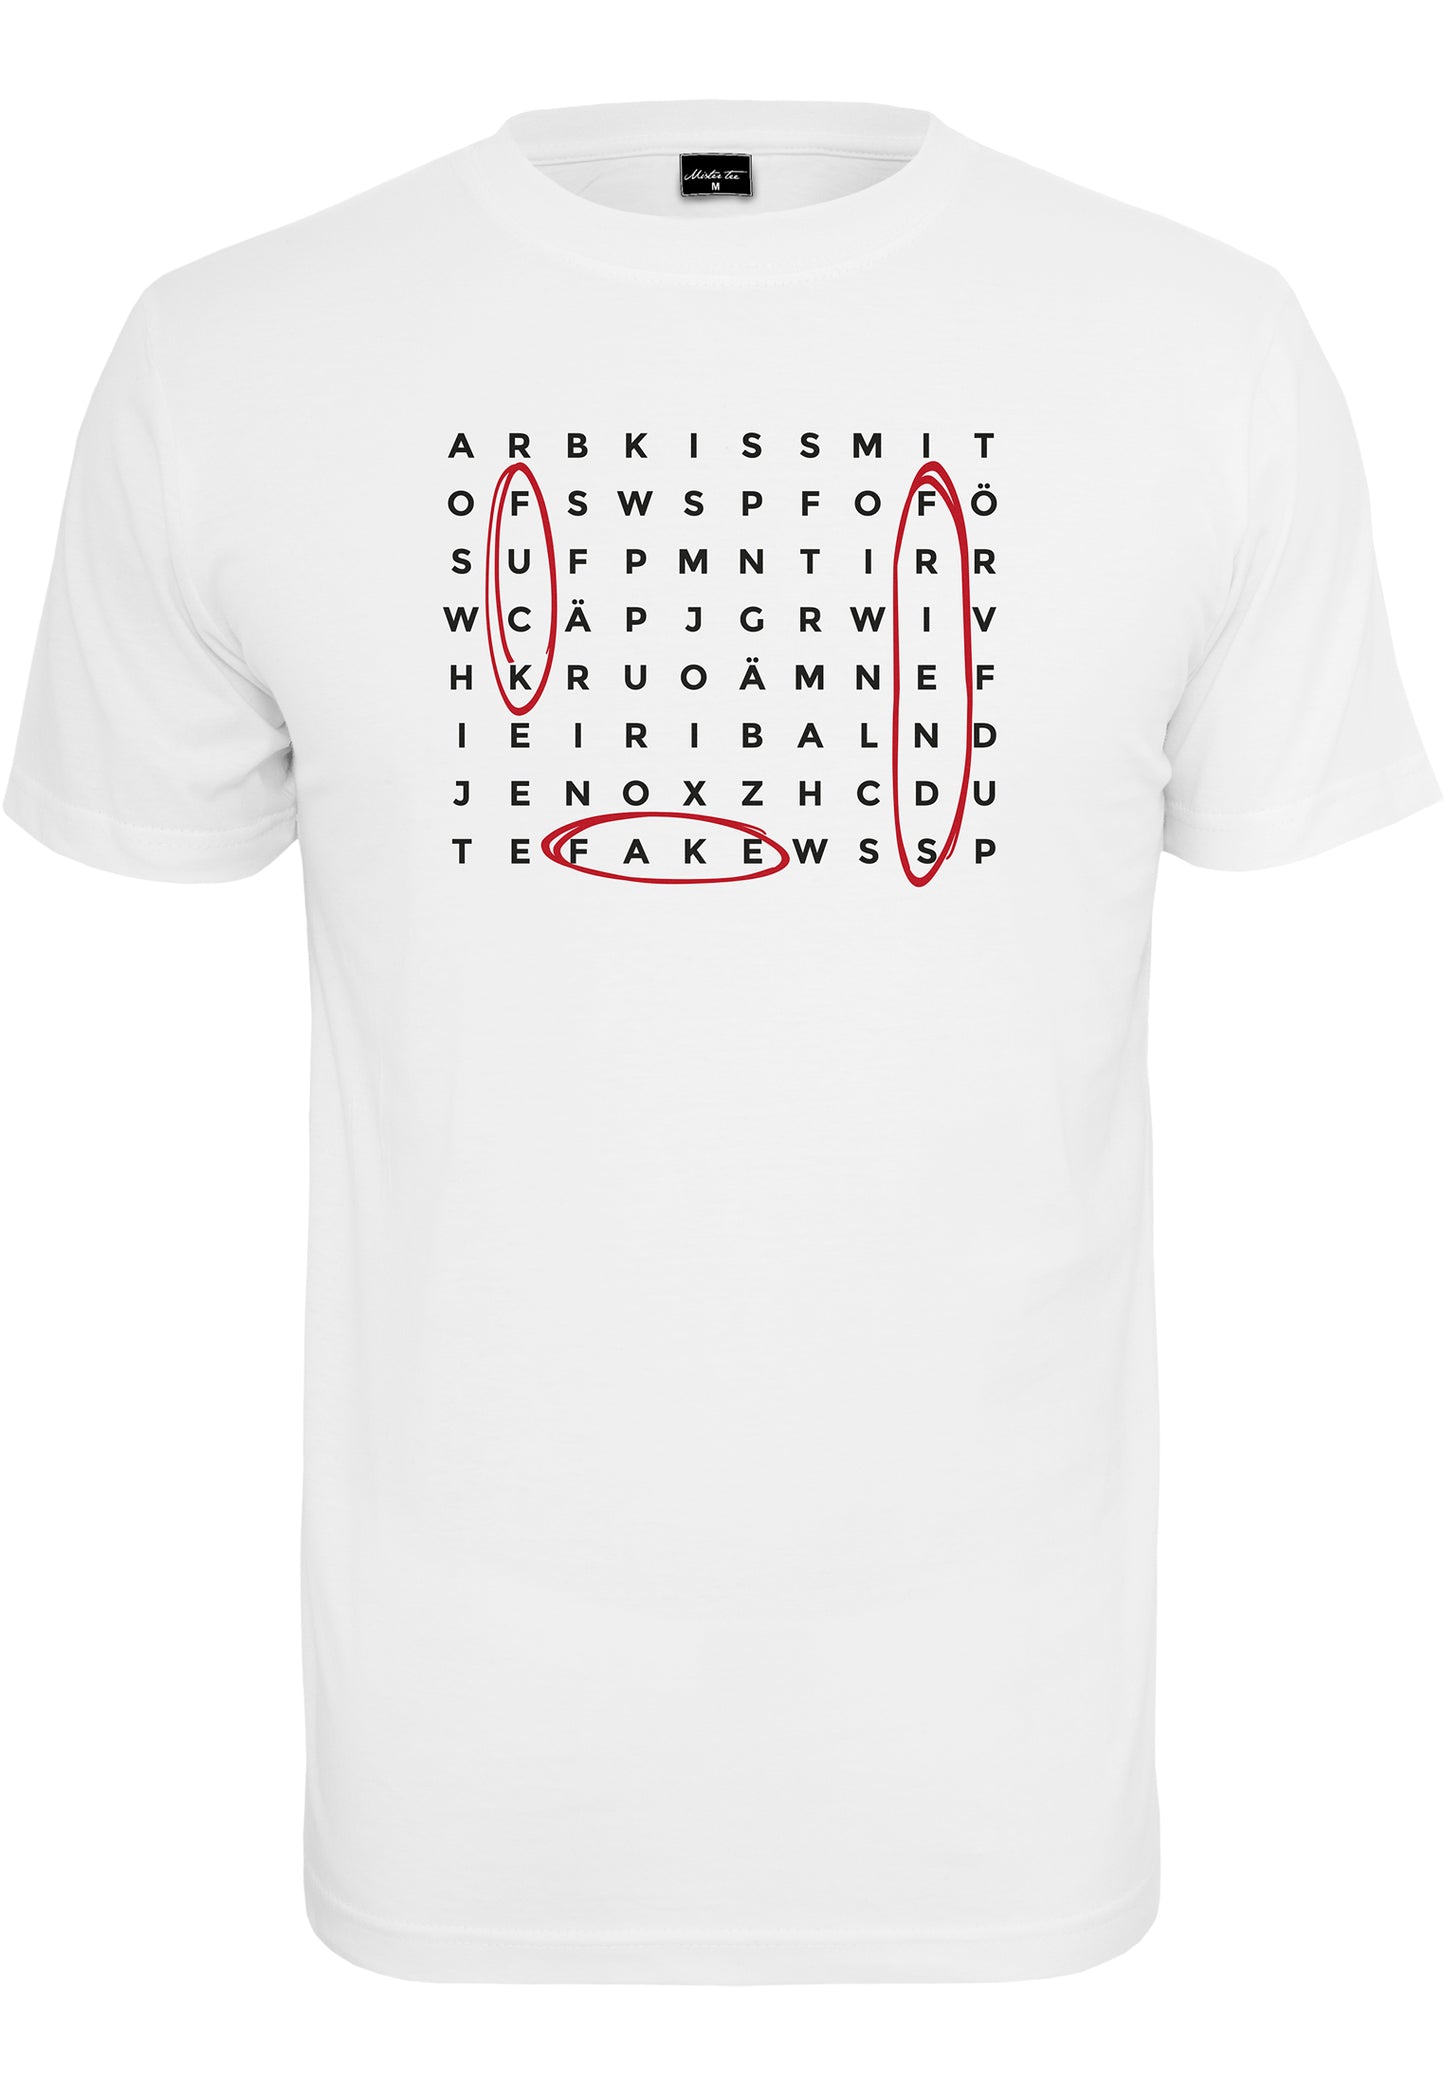 Mister Crossword F**k Falsche Freunde Herren T-Shirt